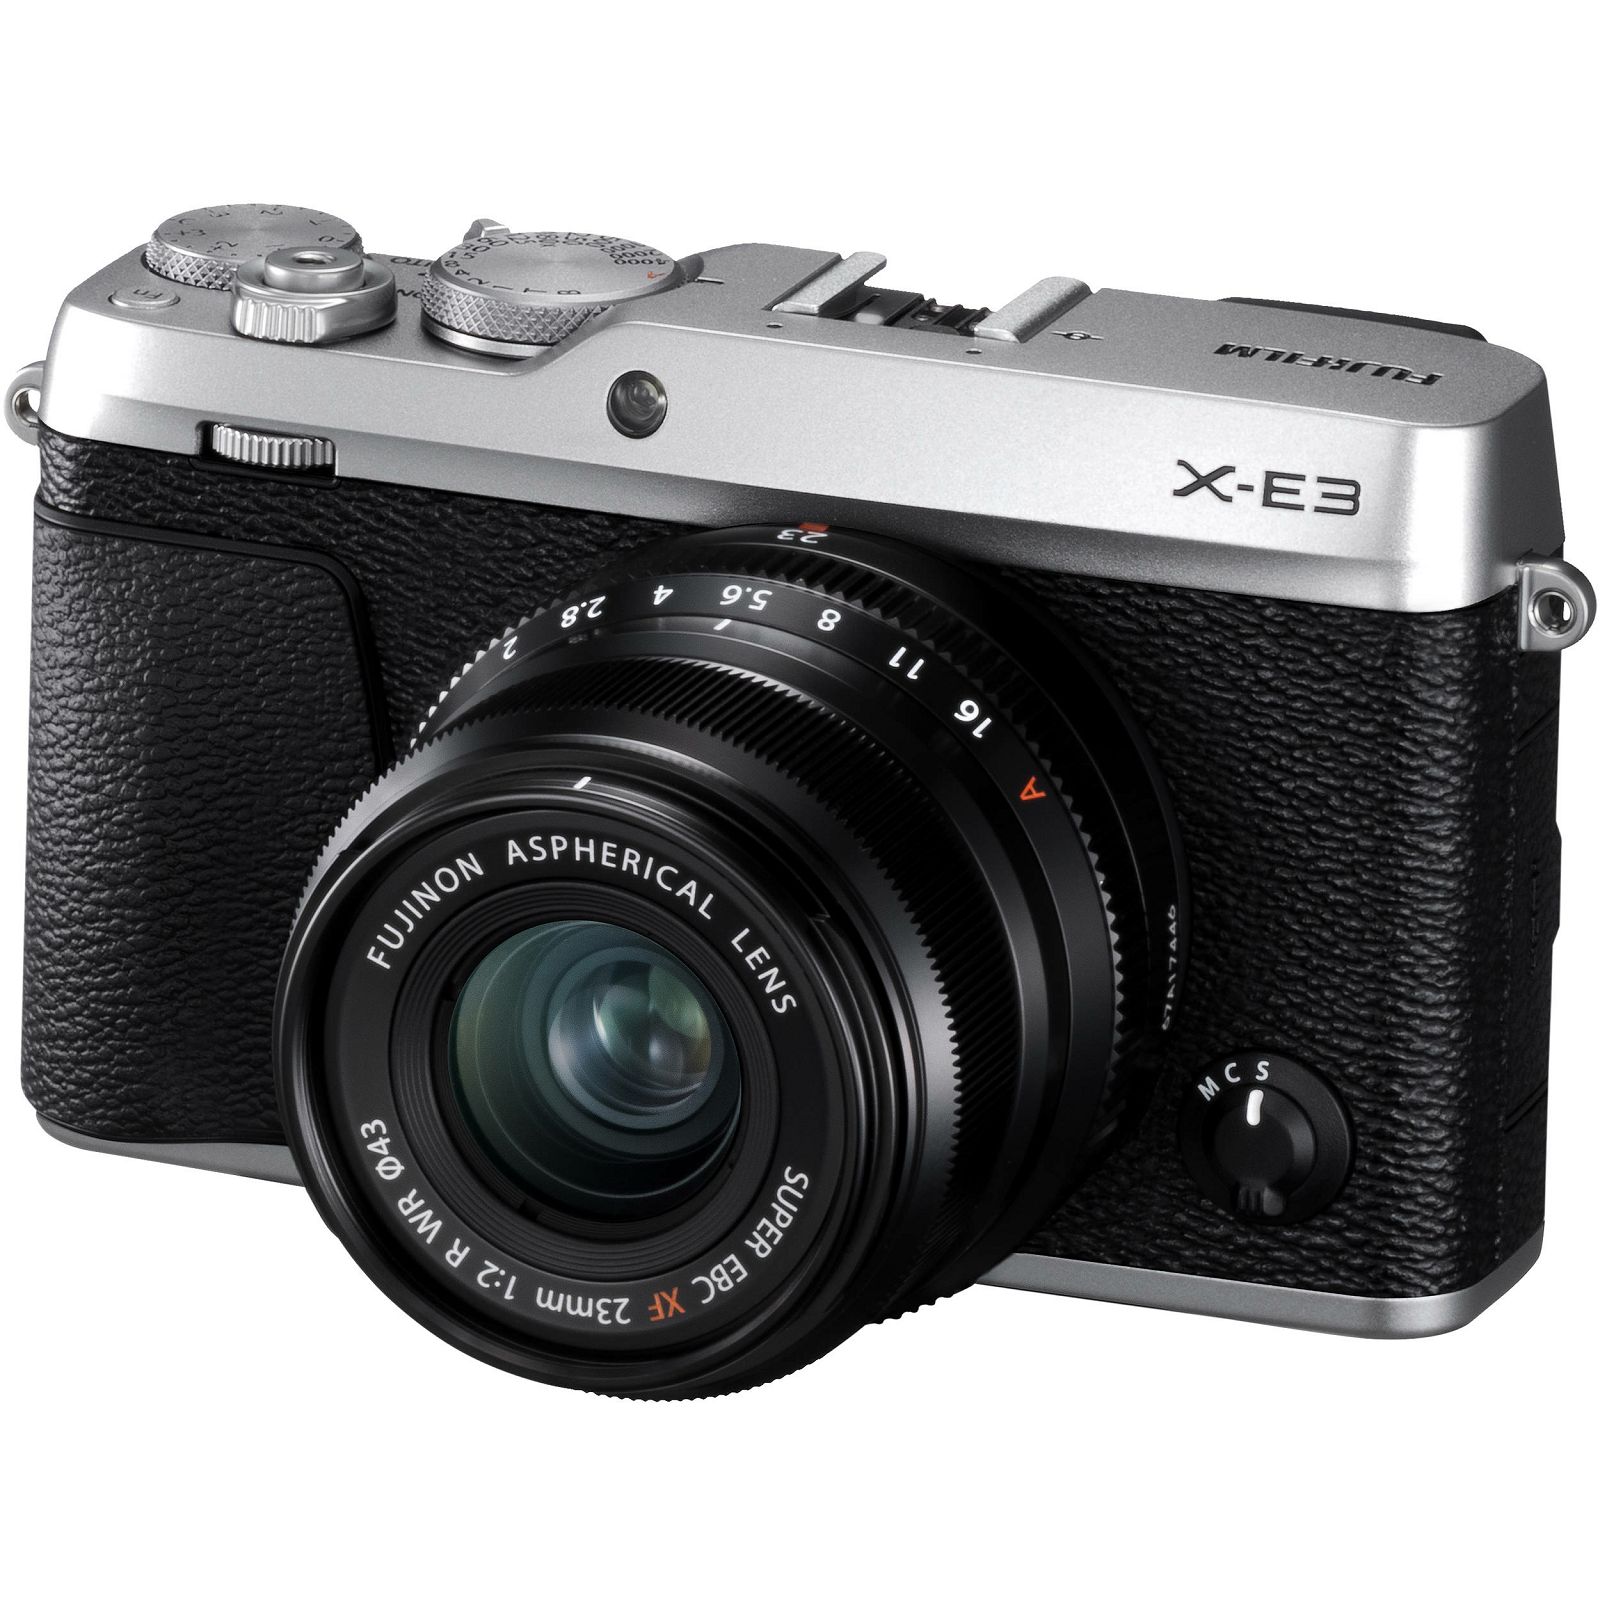 Fujifilm X-E3 + XF 23mm f/2 WR EE KIT Silver srebreni Digitalni fotoaparat s objektivom XF23mm F2 Mirrorless camera Fuji Finepix XE3